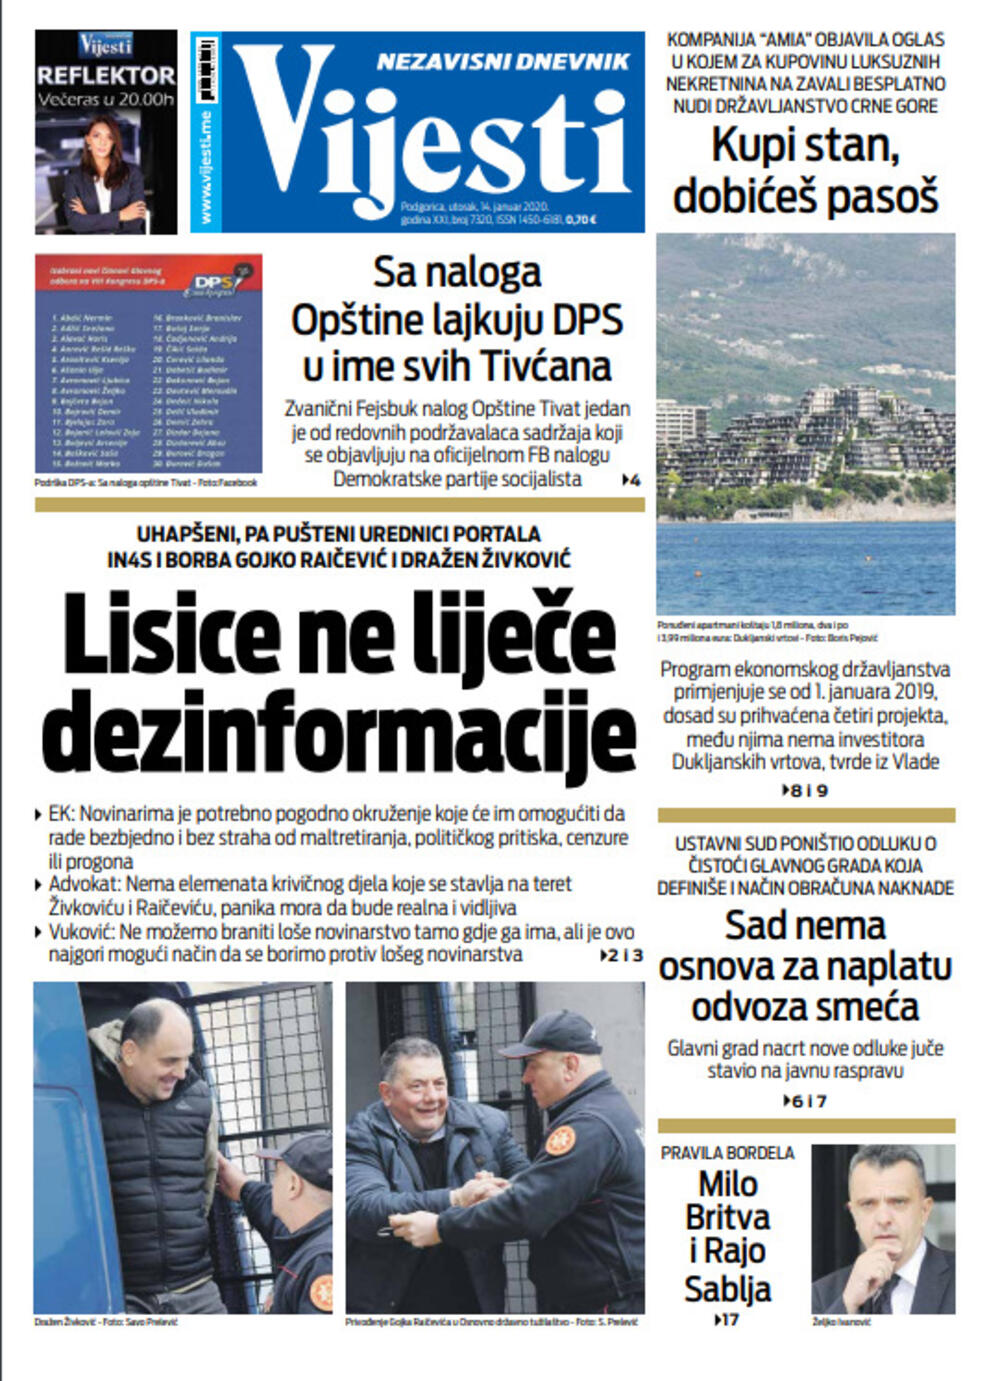 Naslovna strana "Vijesti" za 14. januar. 2020. godine, Foto: Vijesti